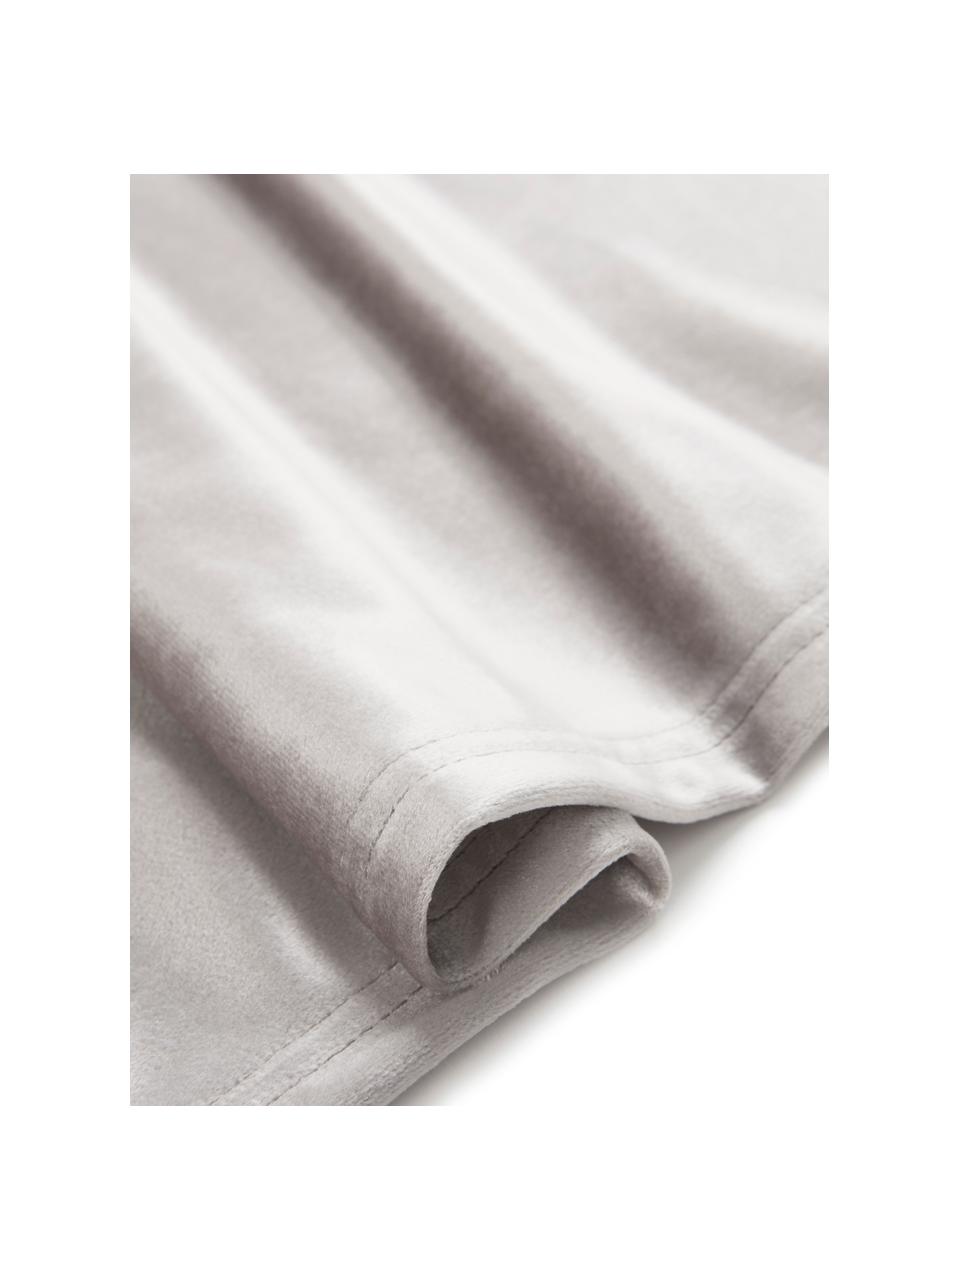 Chemin de table velours gris Simone, 100 % velours de polyester, Gris, larg. 40 x long. 140 cm